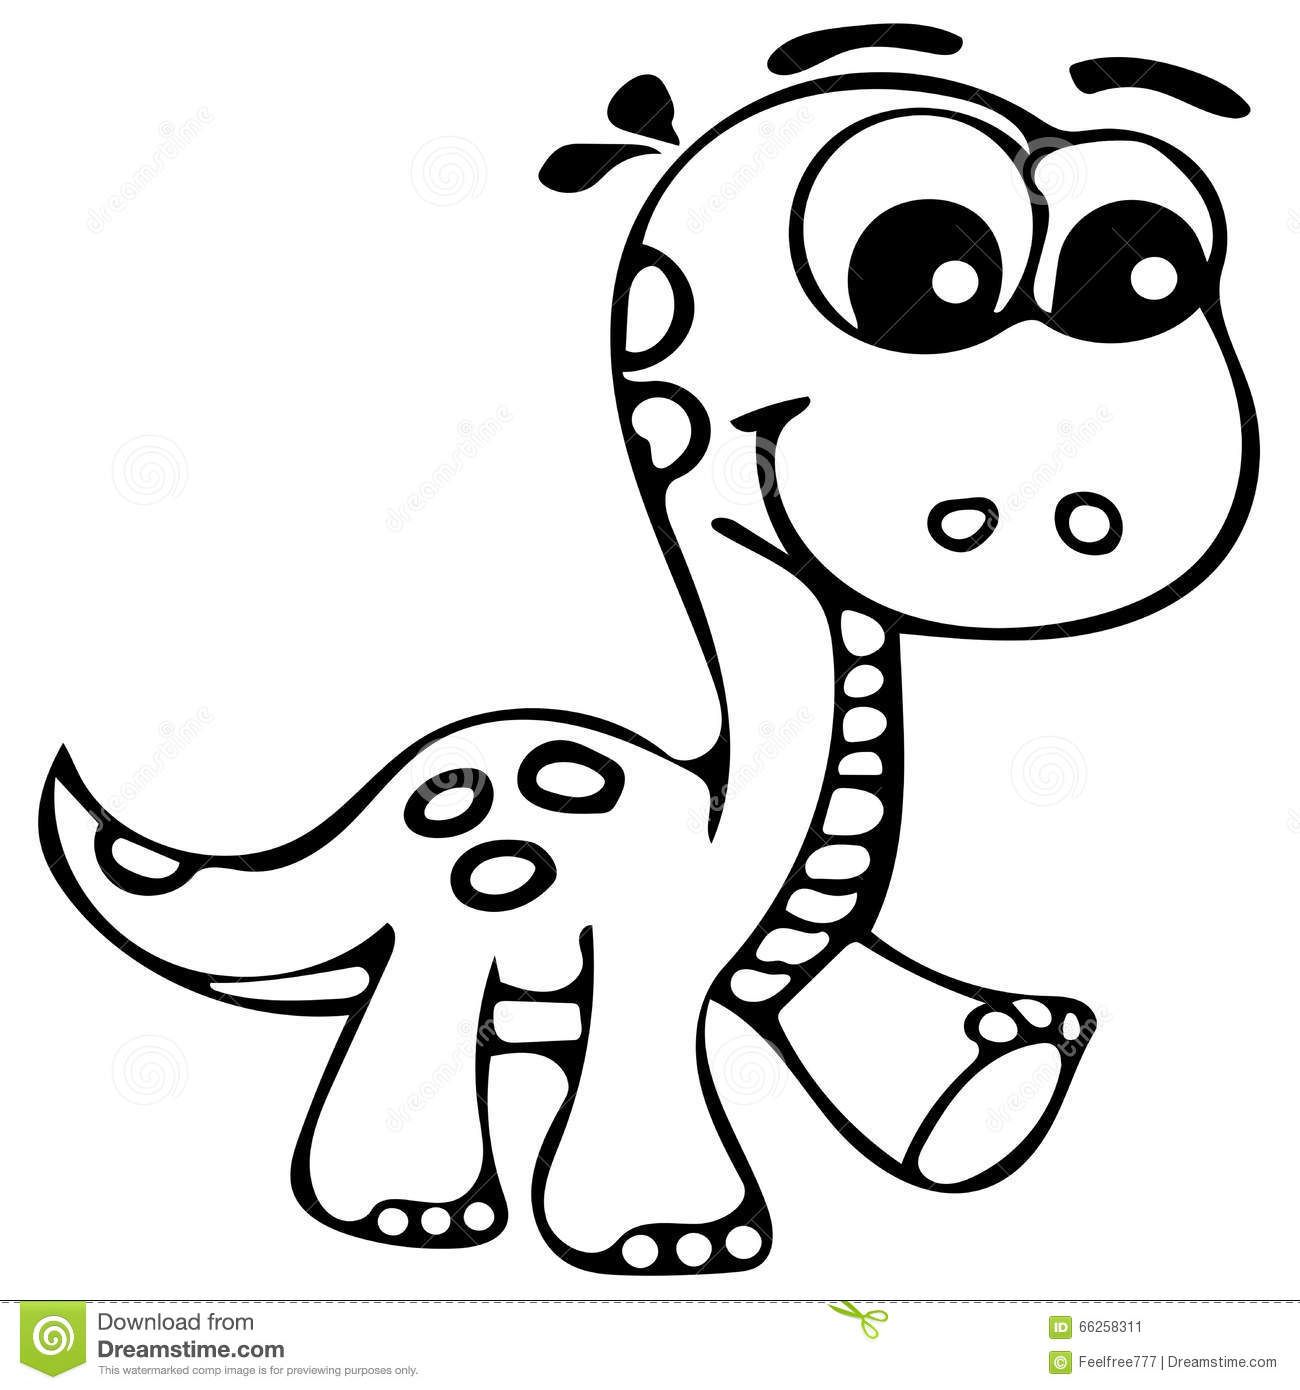 Vamos desenhar um dinossauro fofinho? 🦕✍🏻